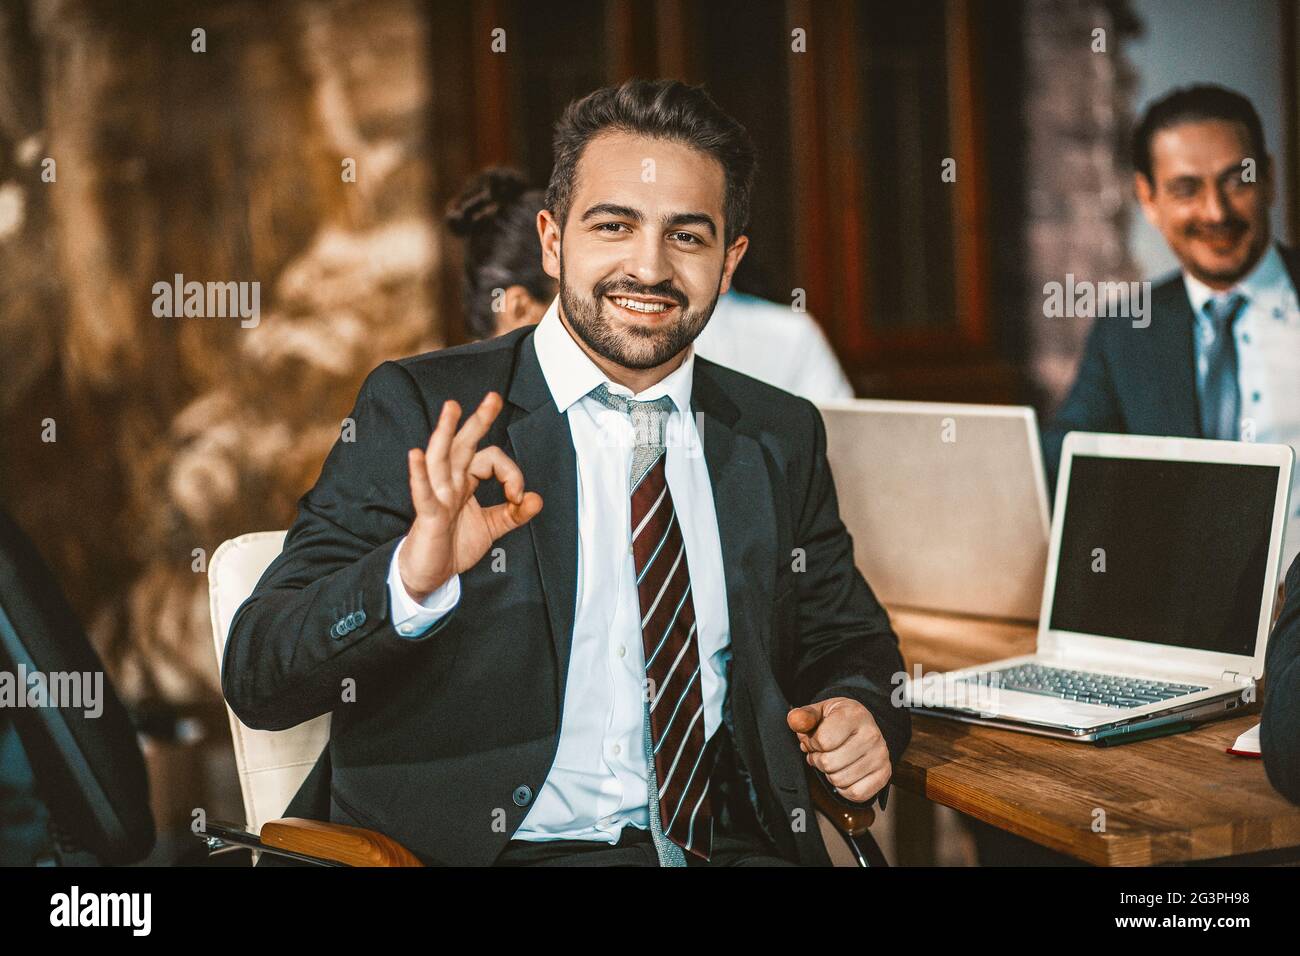 Le Business Person intelligent affiche OK Sign posant à l'appareil photo Banque D'Images